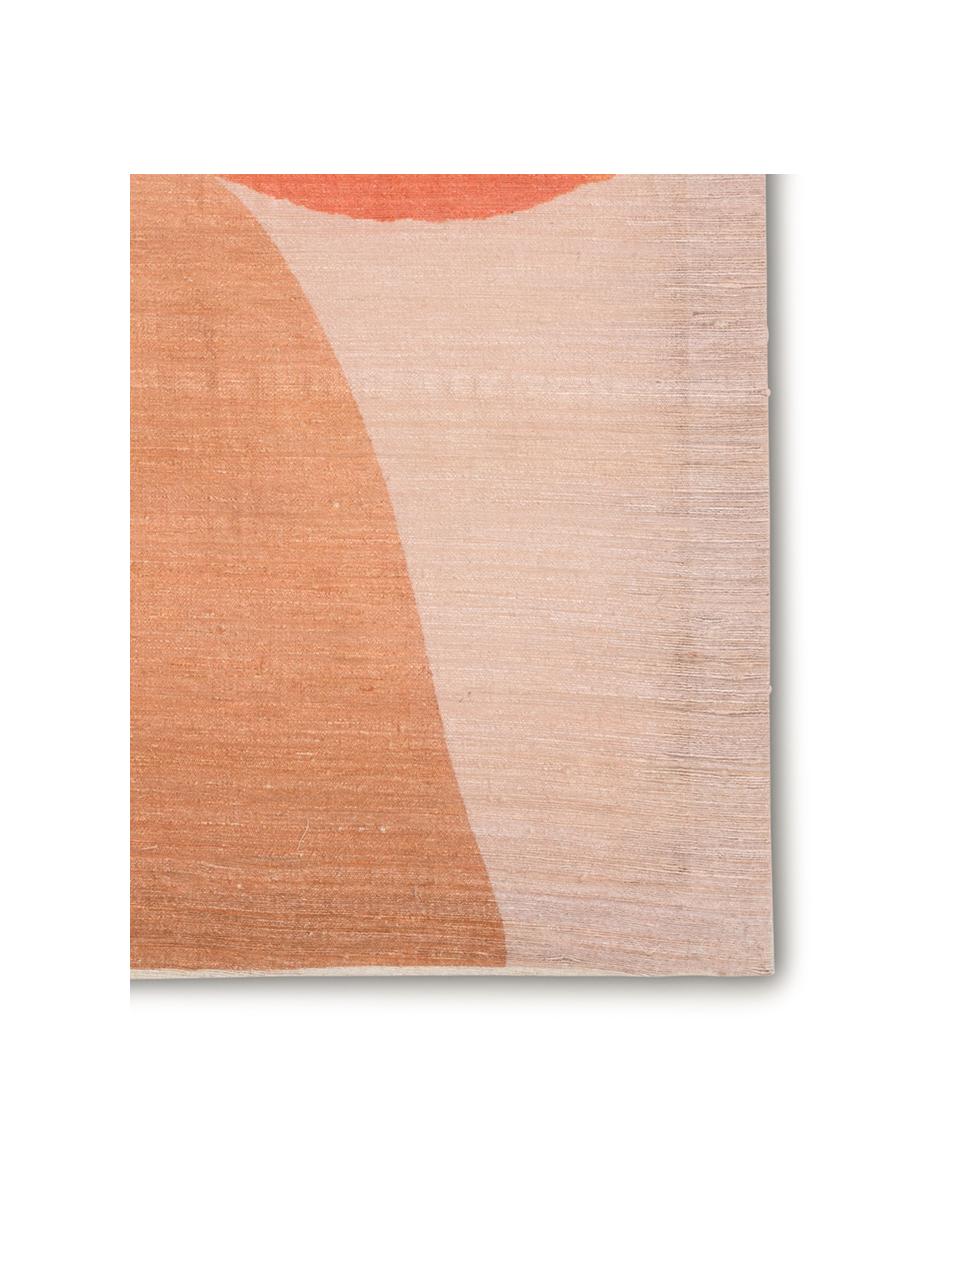 Handbeschilderde canvasdoek Dots, Khadi zijde, Oranje, roze, beige, 50 x 65 cm